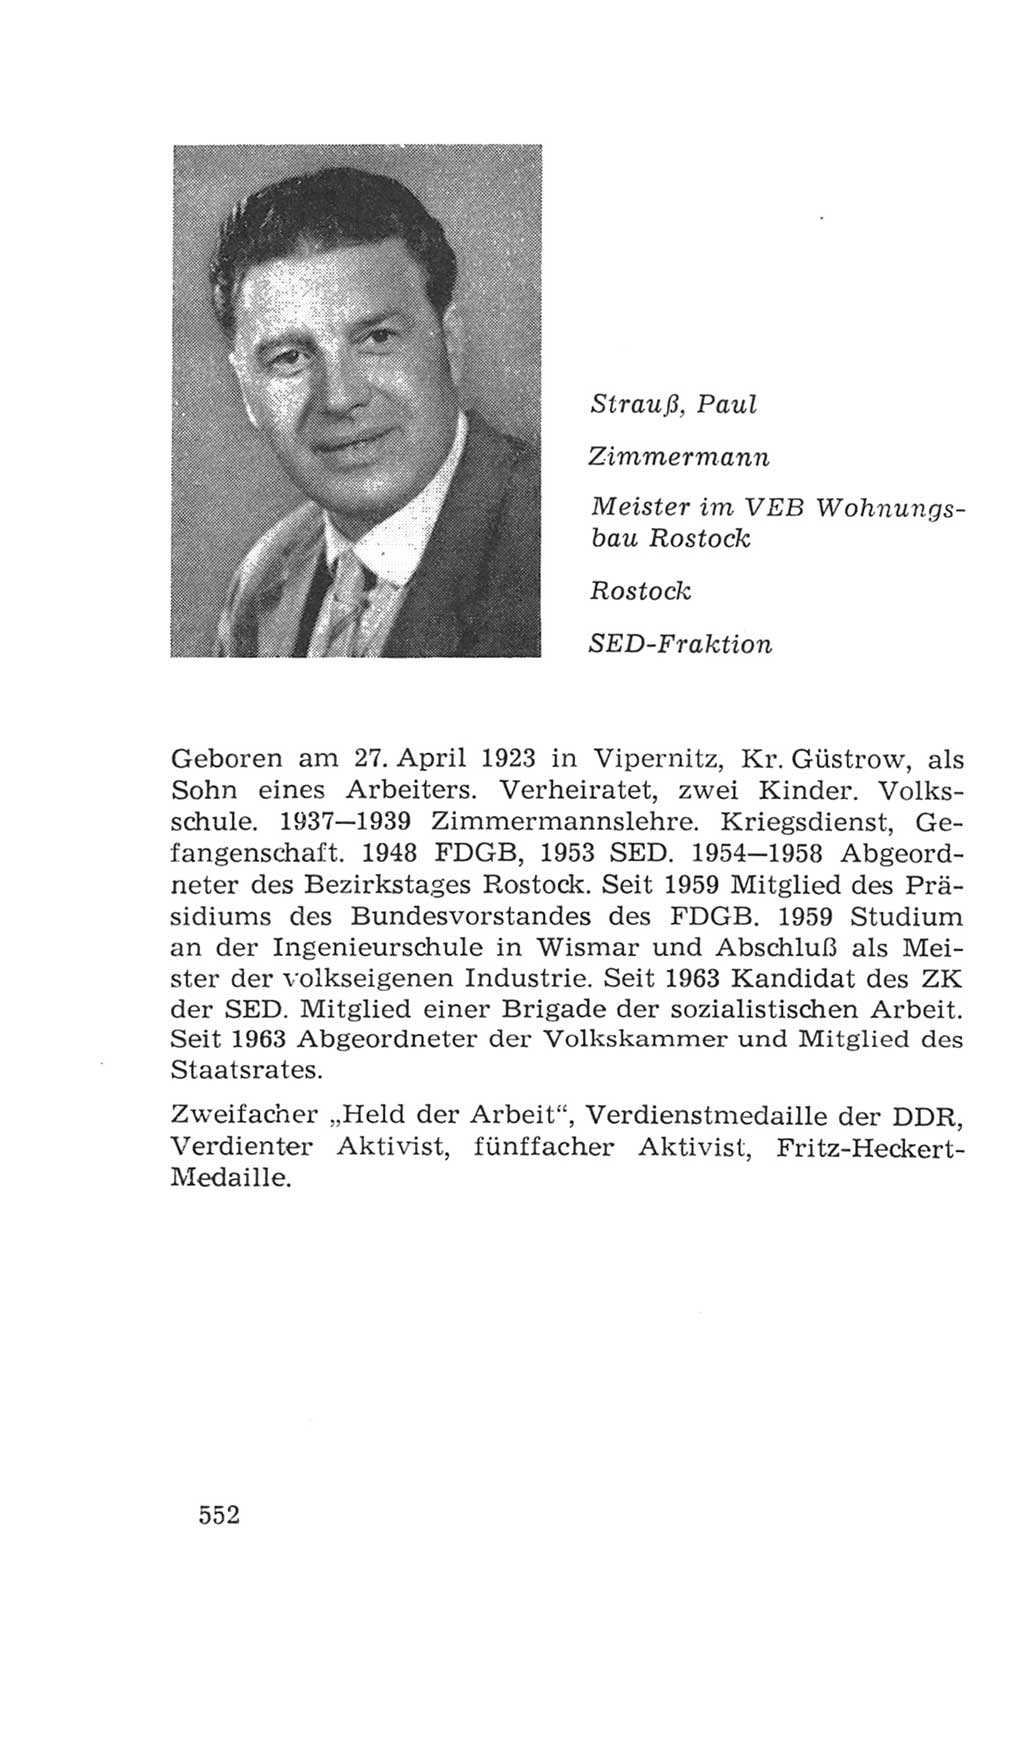 Volkskammer (VK) der Deutschen Demokratischen Republik (DDR), 4. Wahlperiode 1963-1967, Seite 552 (VK. DDR 4. WP. 1963-1967, S. 552)